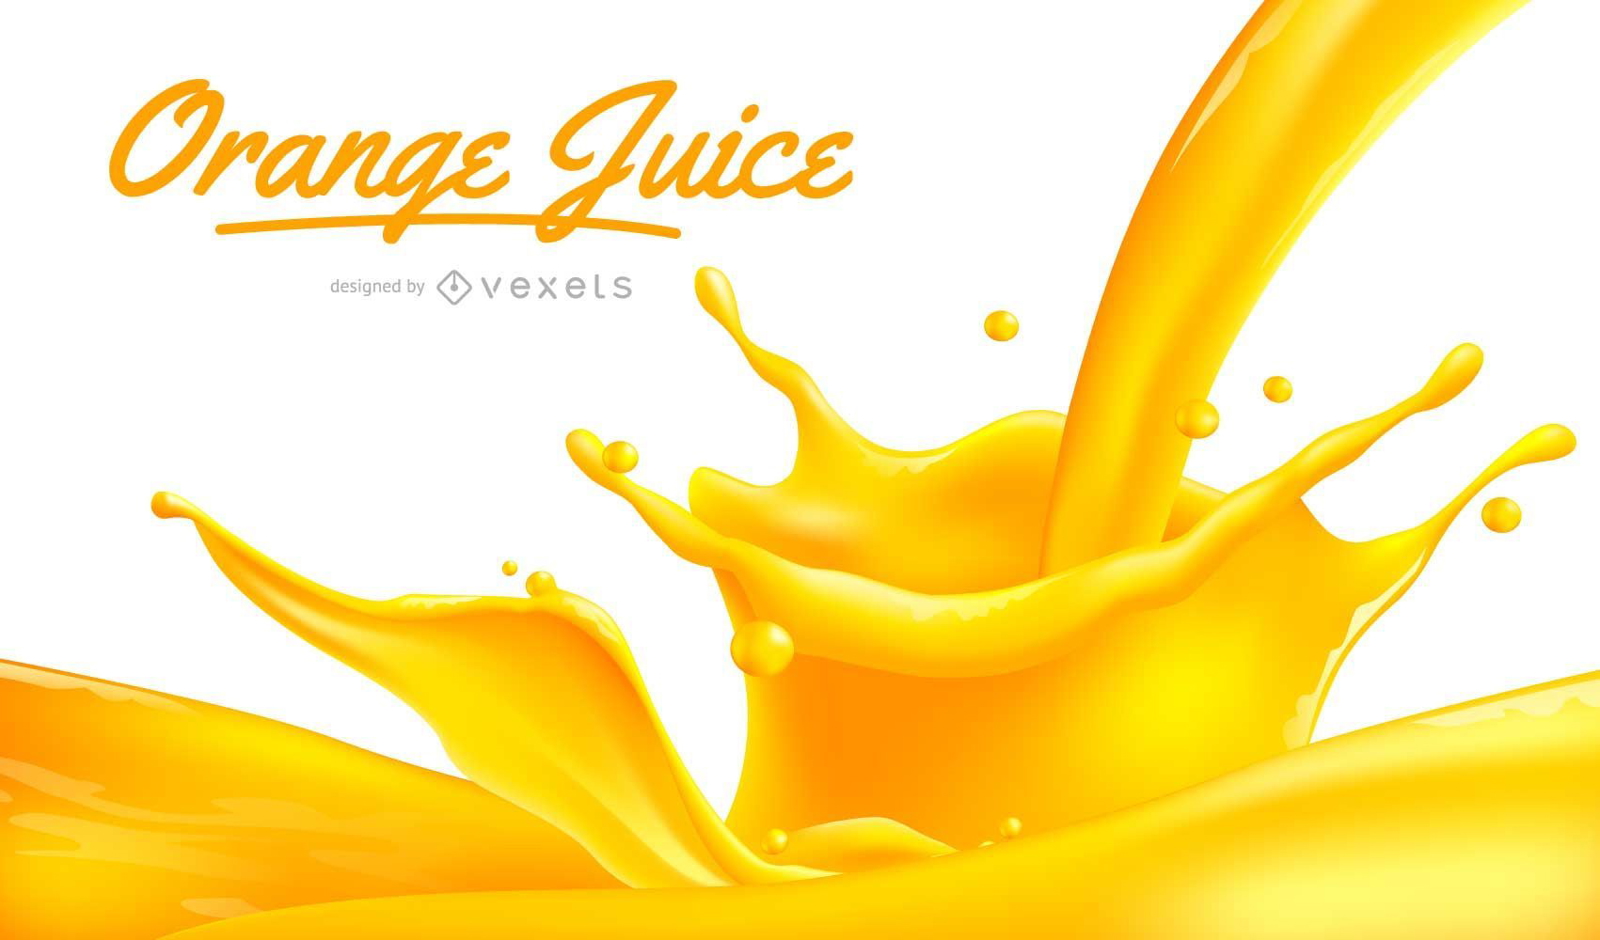 Orange Juice design